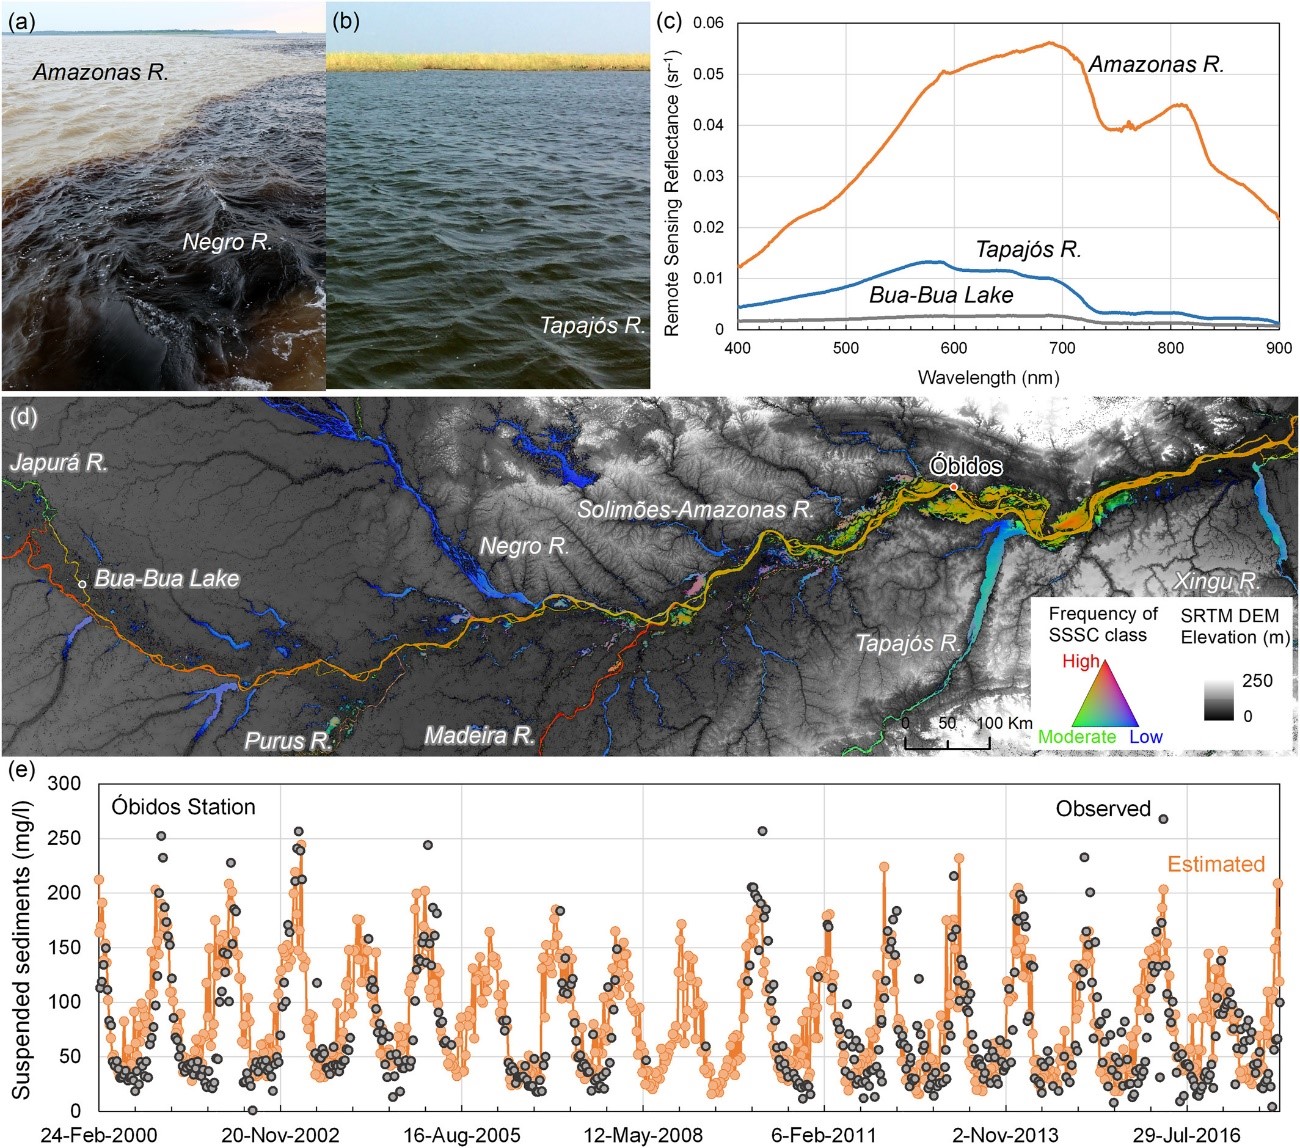 Exemplos de águas amazônicas, variabilidade espacial de sedimentos e estimativa da sedimentação observada